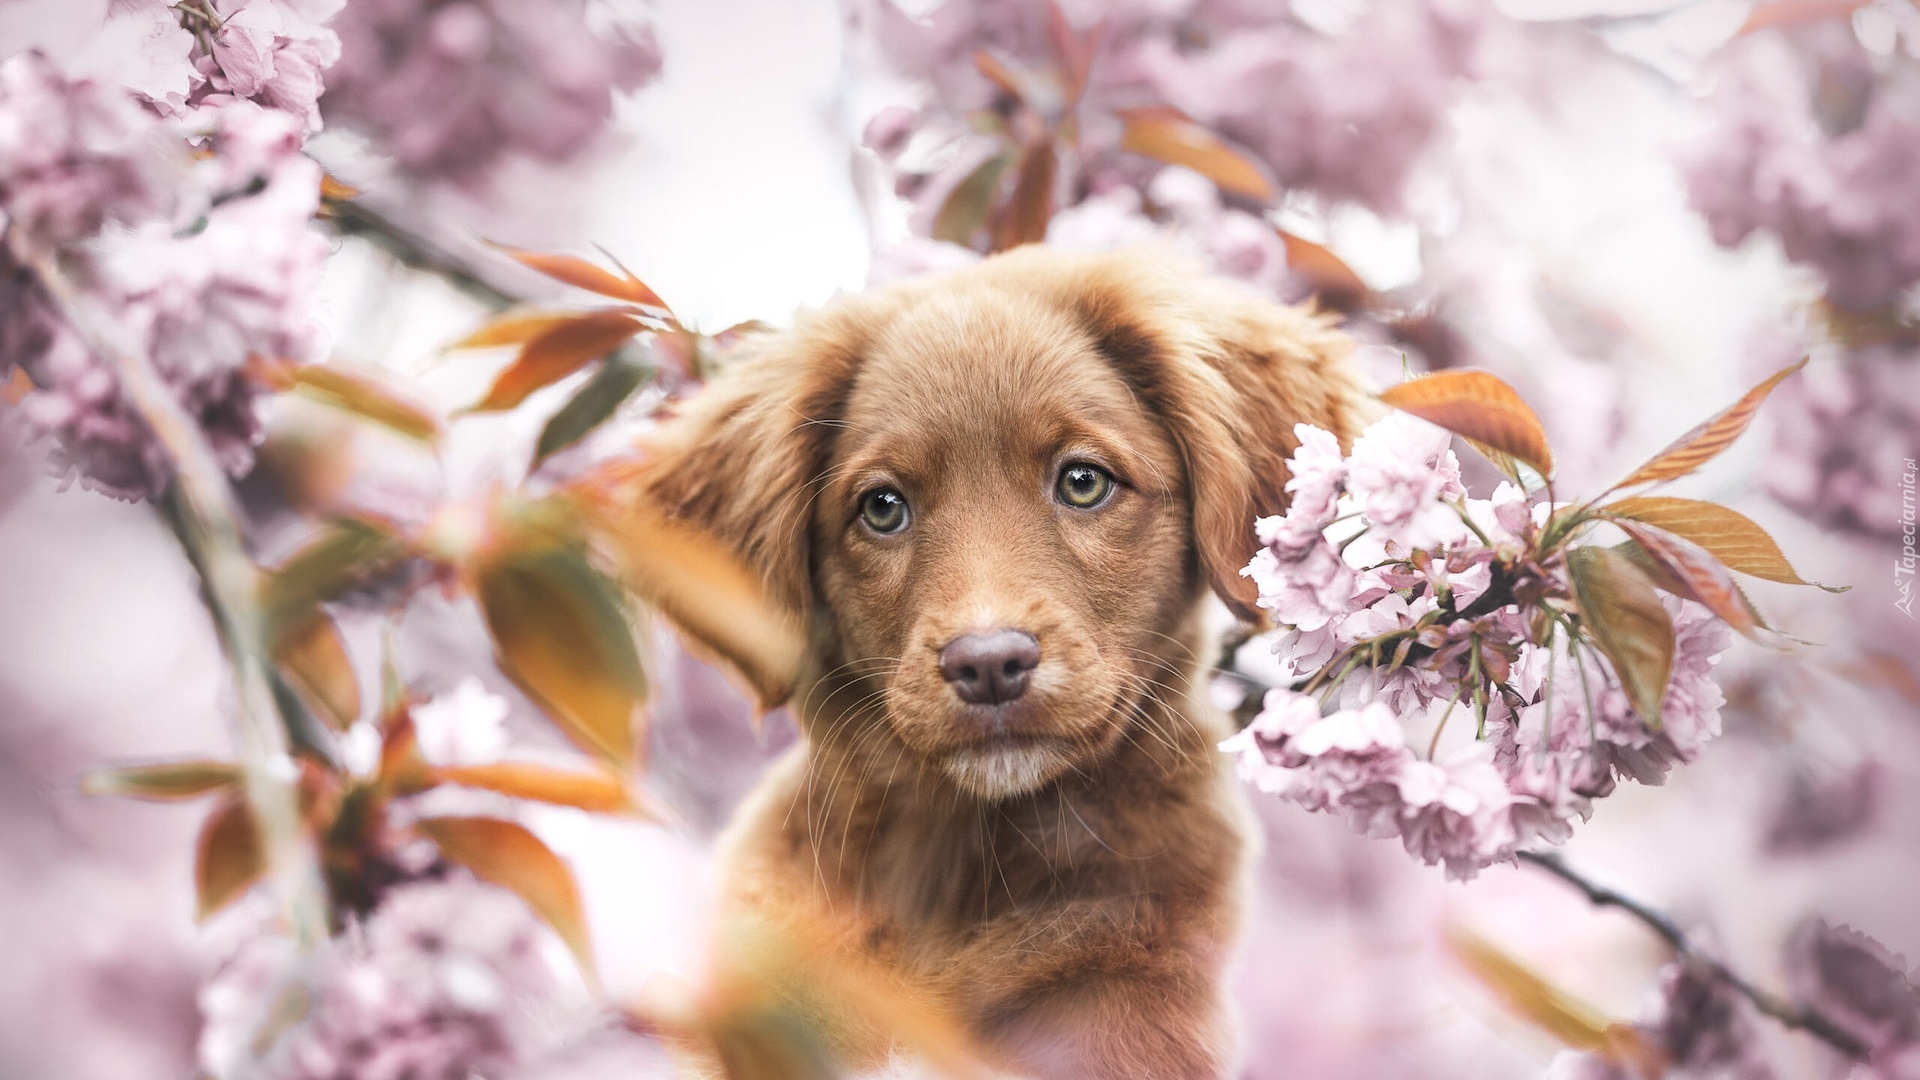 Pies, Brązowy, Szczeniak, Retriever z Nowej Szkocji, Kwiaty, Drzewo owocowe, Rozmycie